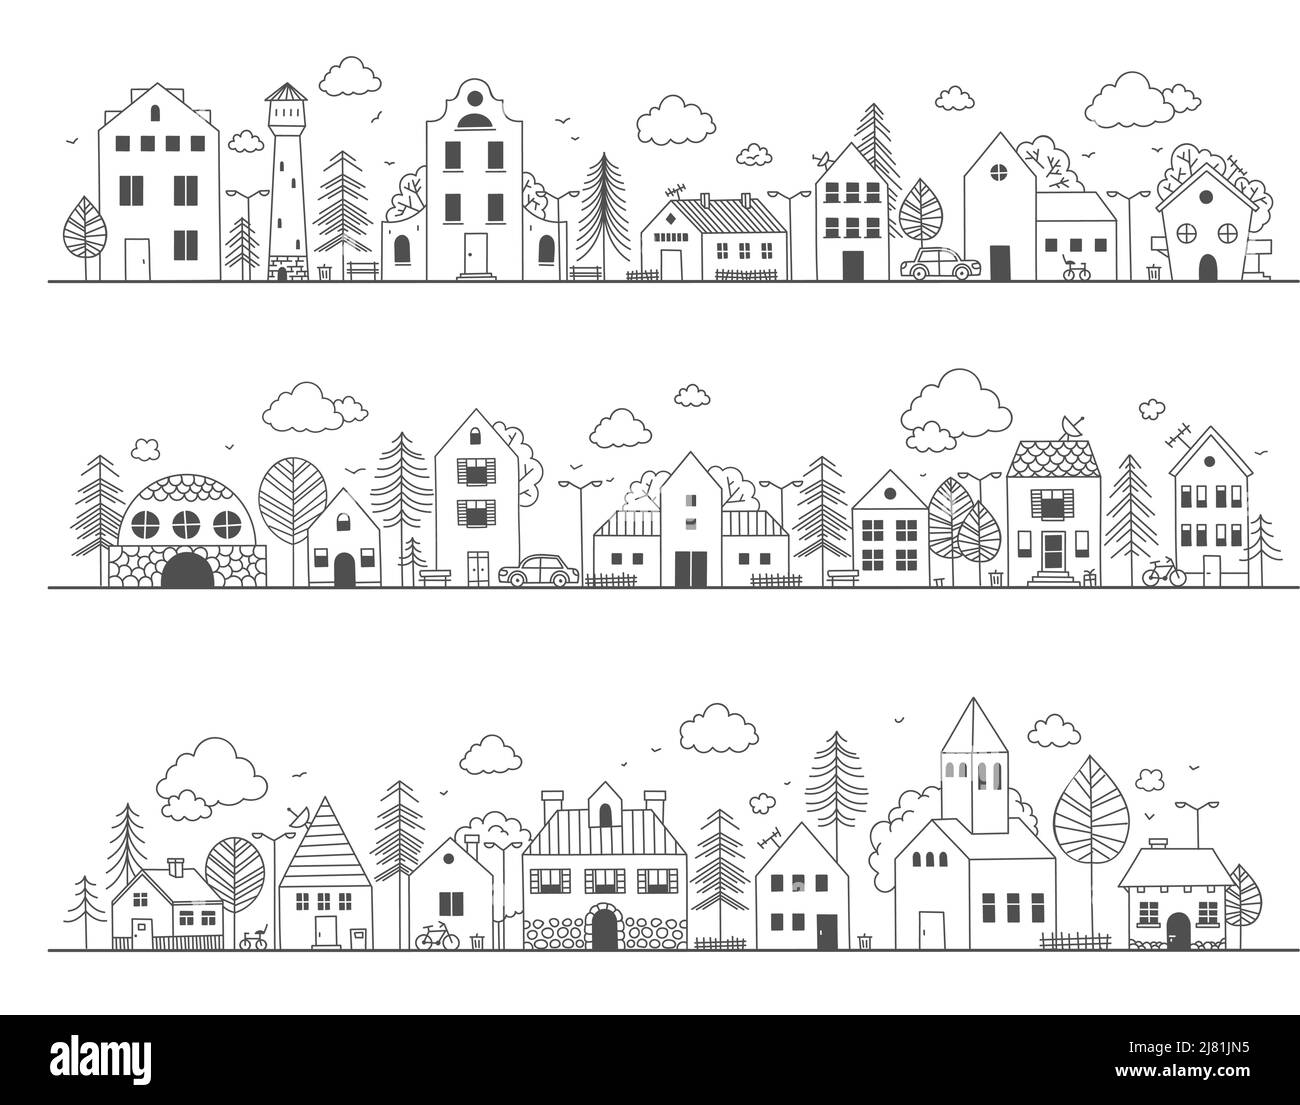 Rue de la ville de Doodle. Jolis bâtiments ruraux avec arbres, dessin de quartier de campagne à la main avec de petites maisons. Scène enfantine vectorielle Illustration de Vecteur